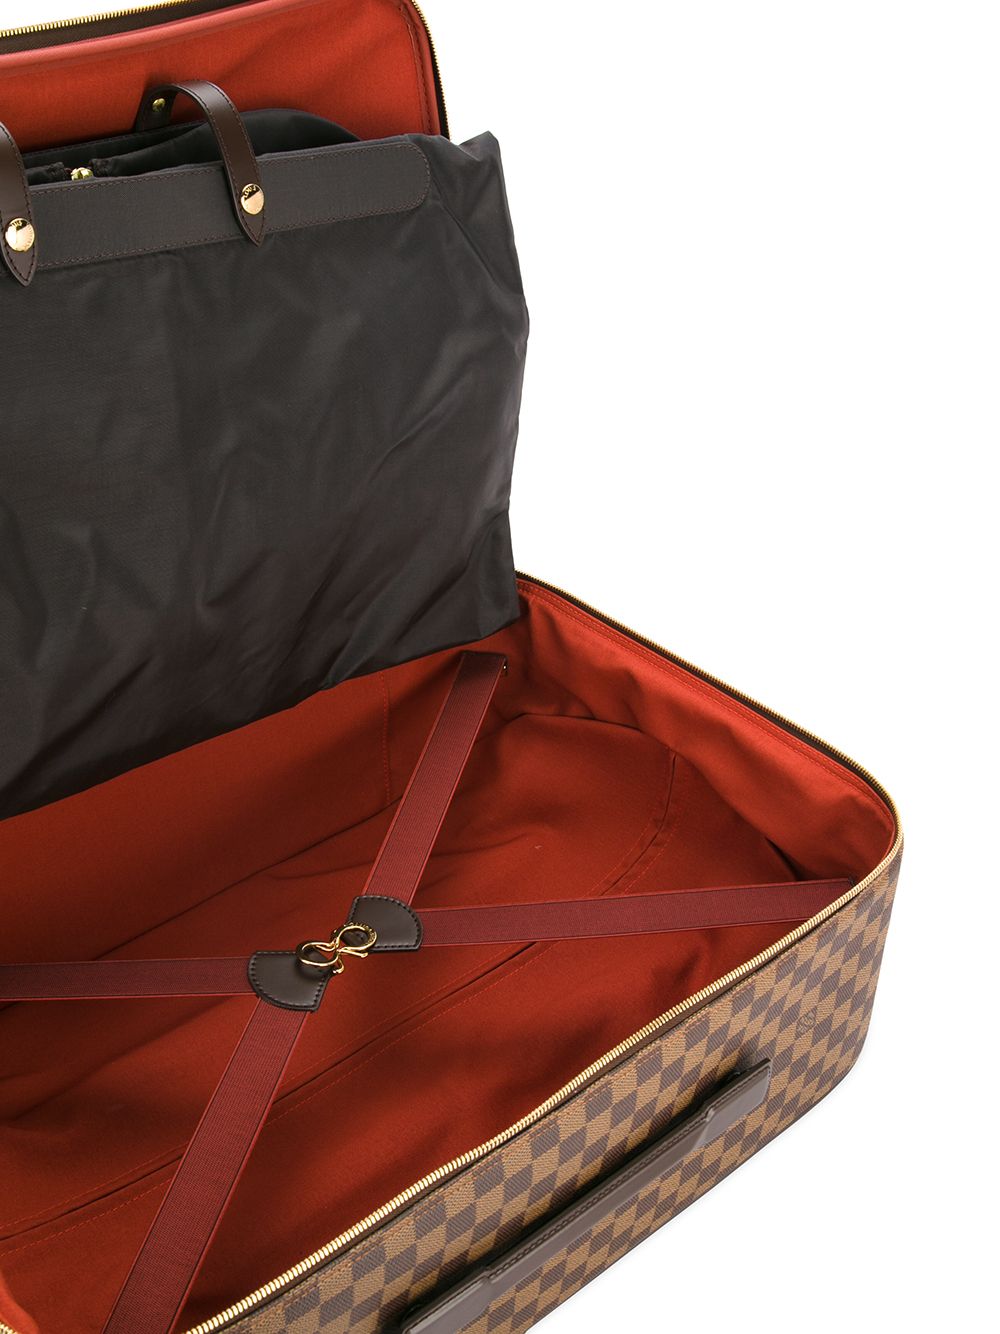 Louis Vuitton Pegase 55 carry-on Luggage - Farfetch